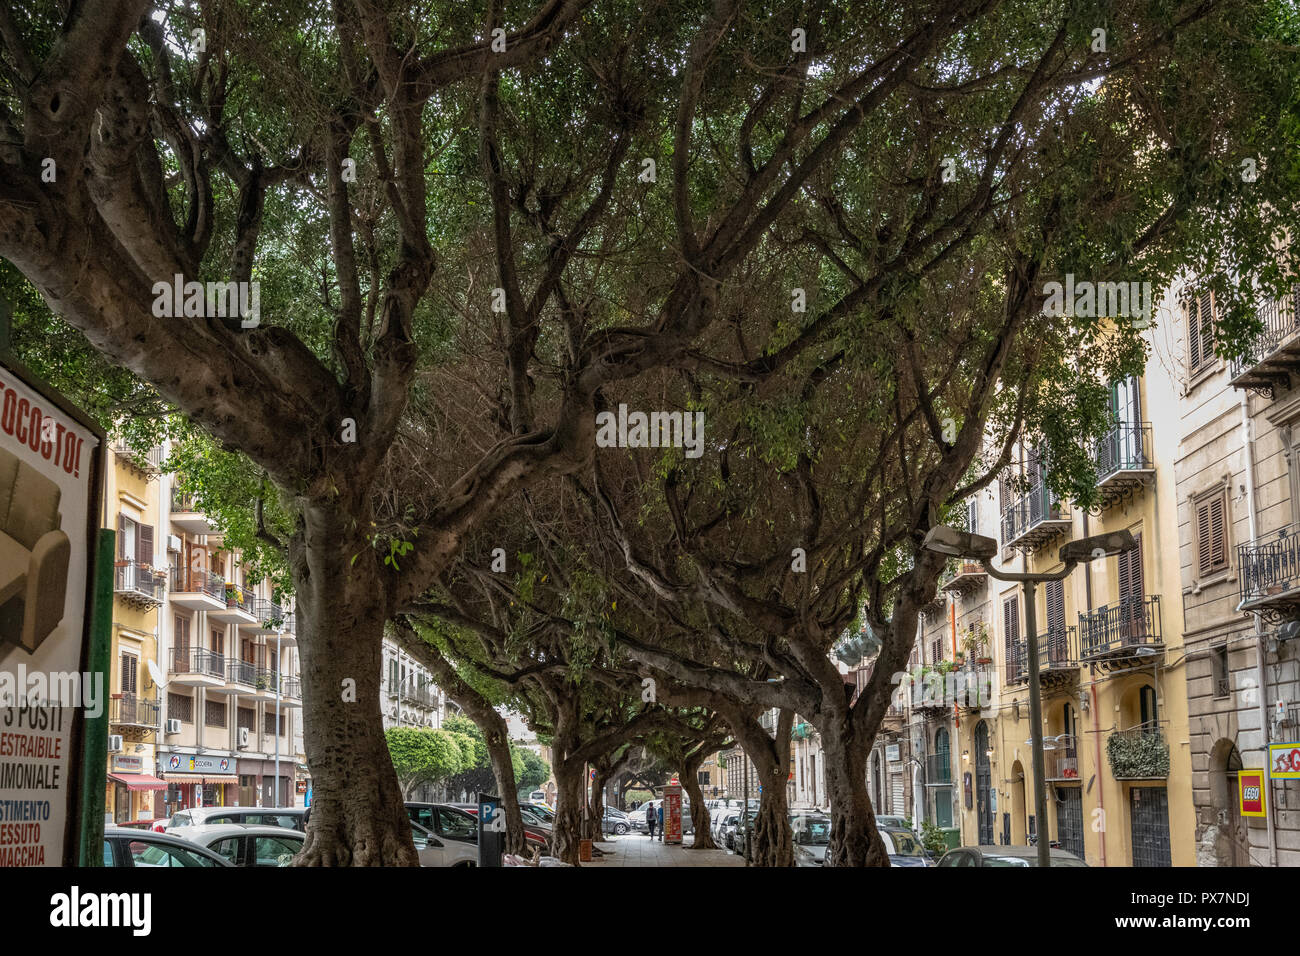 Verdrehte Bäume auf der Straße, Palermo, Sizilien Stockfoto